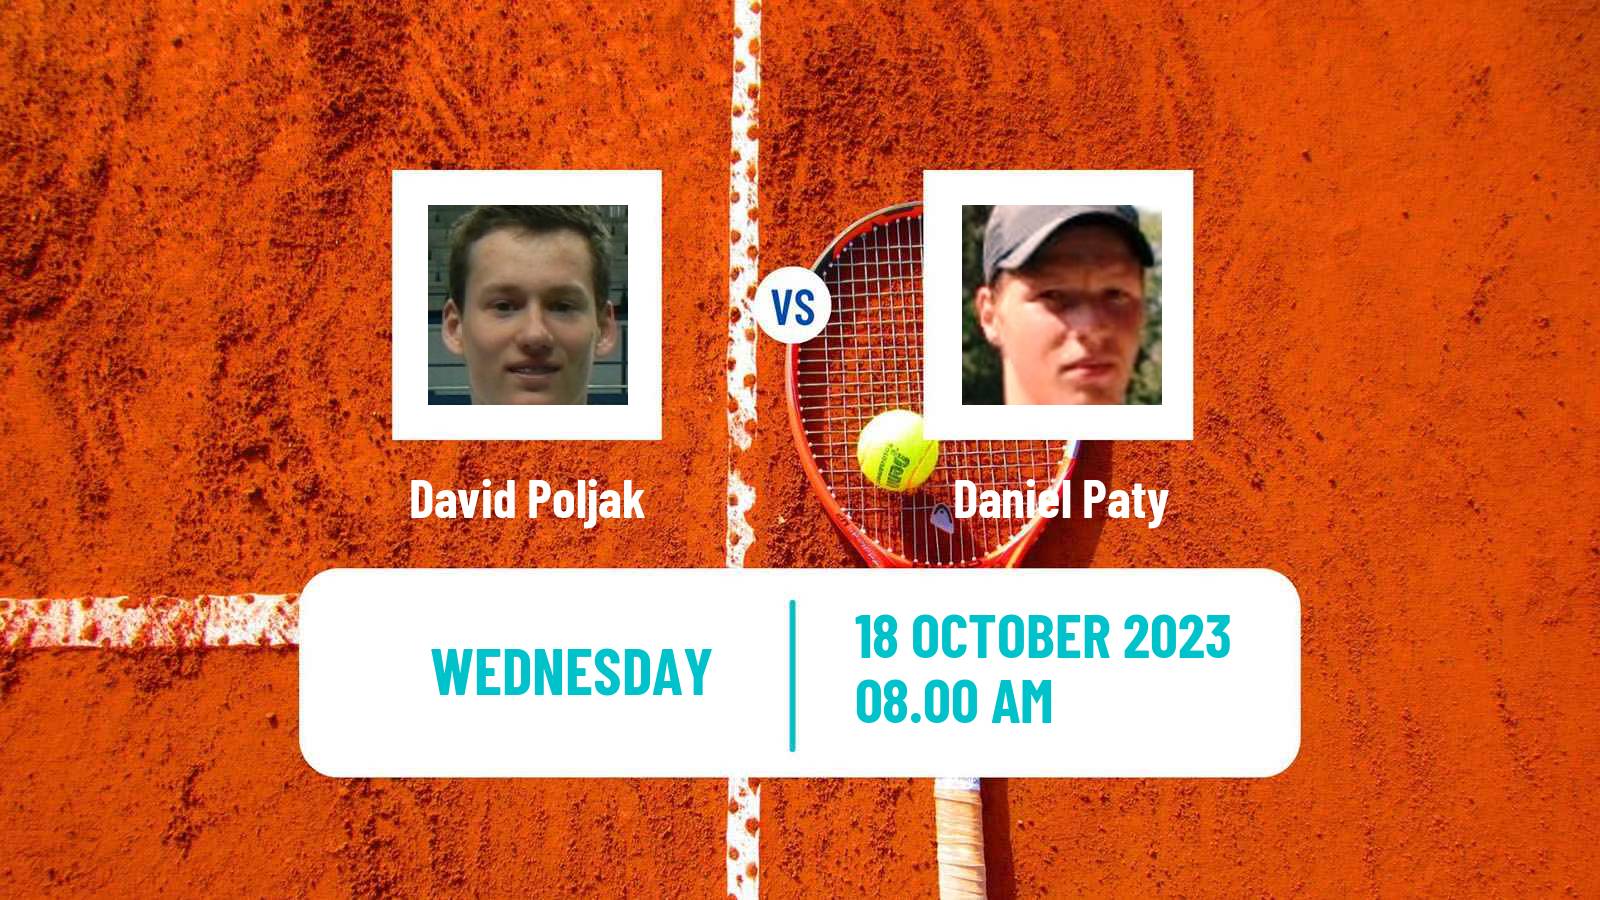 Tennis ITF M25 Tavira 2 Men David Poljak - Daniel Paty